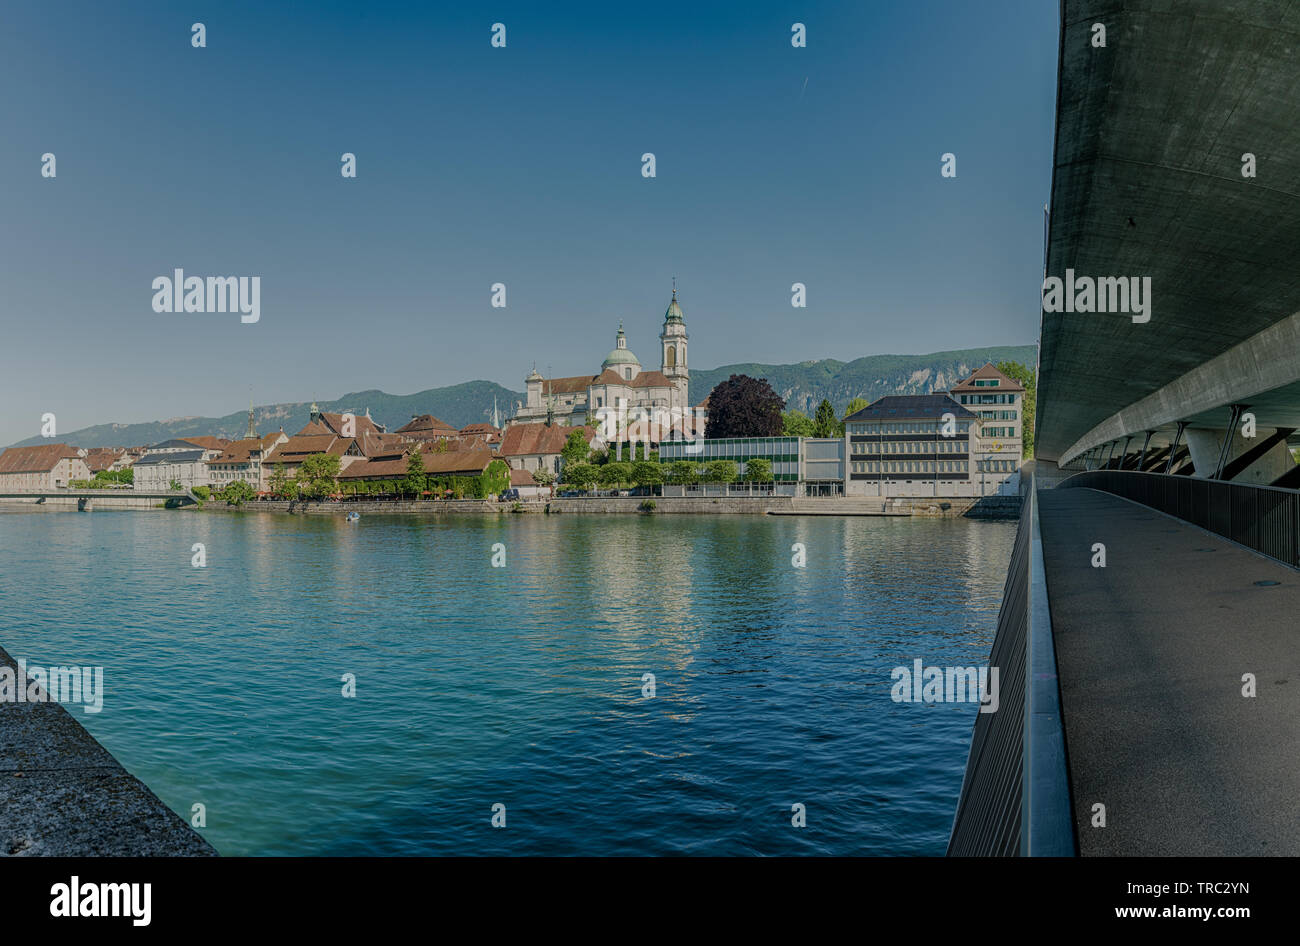 Solothurn, SO/Schweiz - vom 2. Juni 2019: Stadt Solothurn mit dem Fluss Aare anzeigen Panorama stadtbild der Altstadt Stockfoto